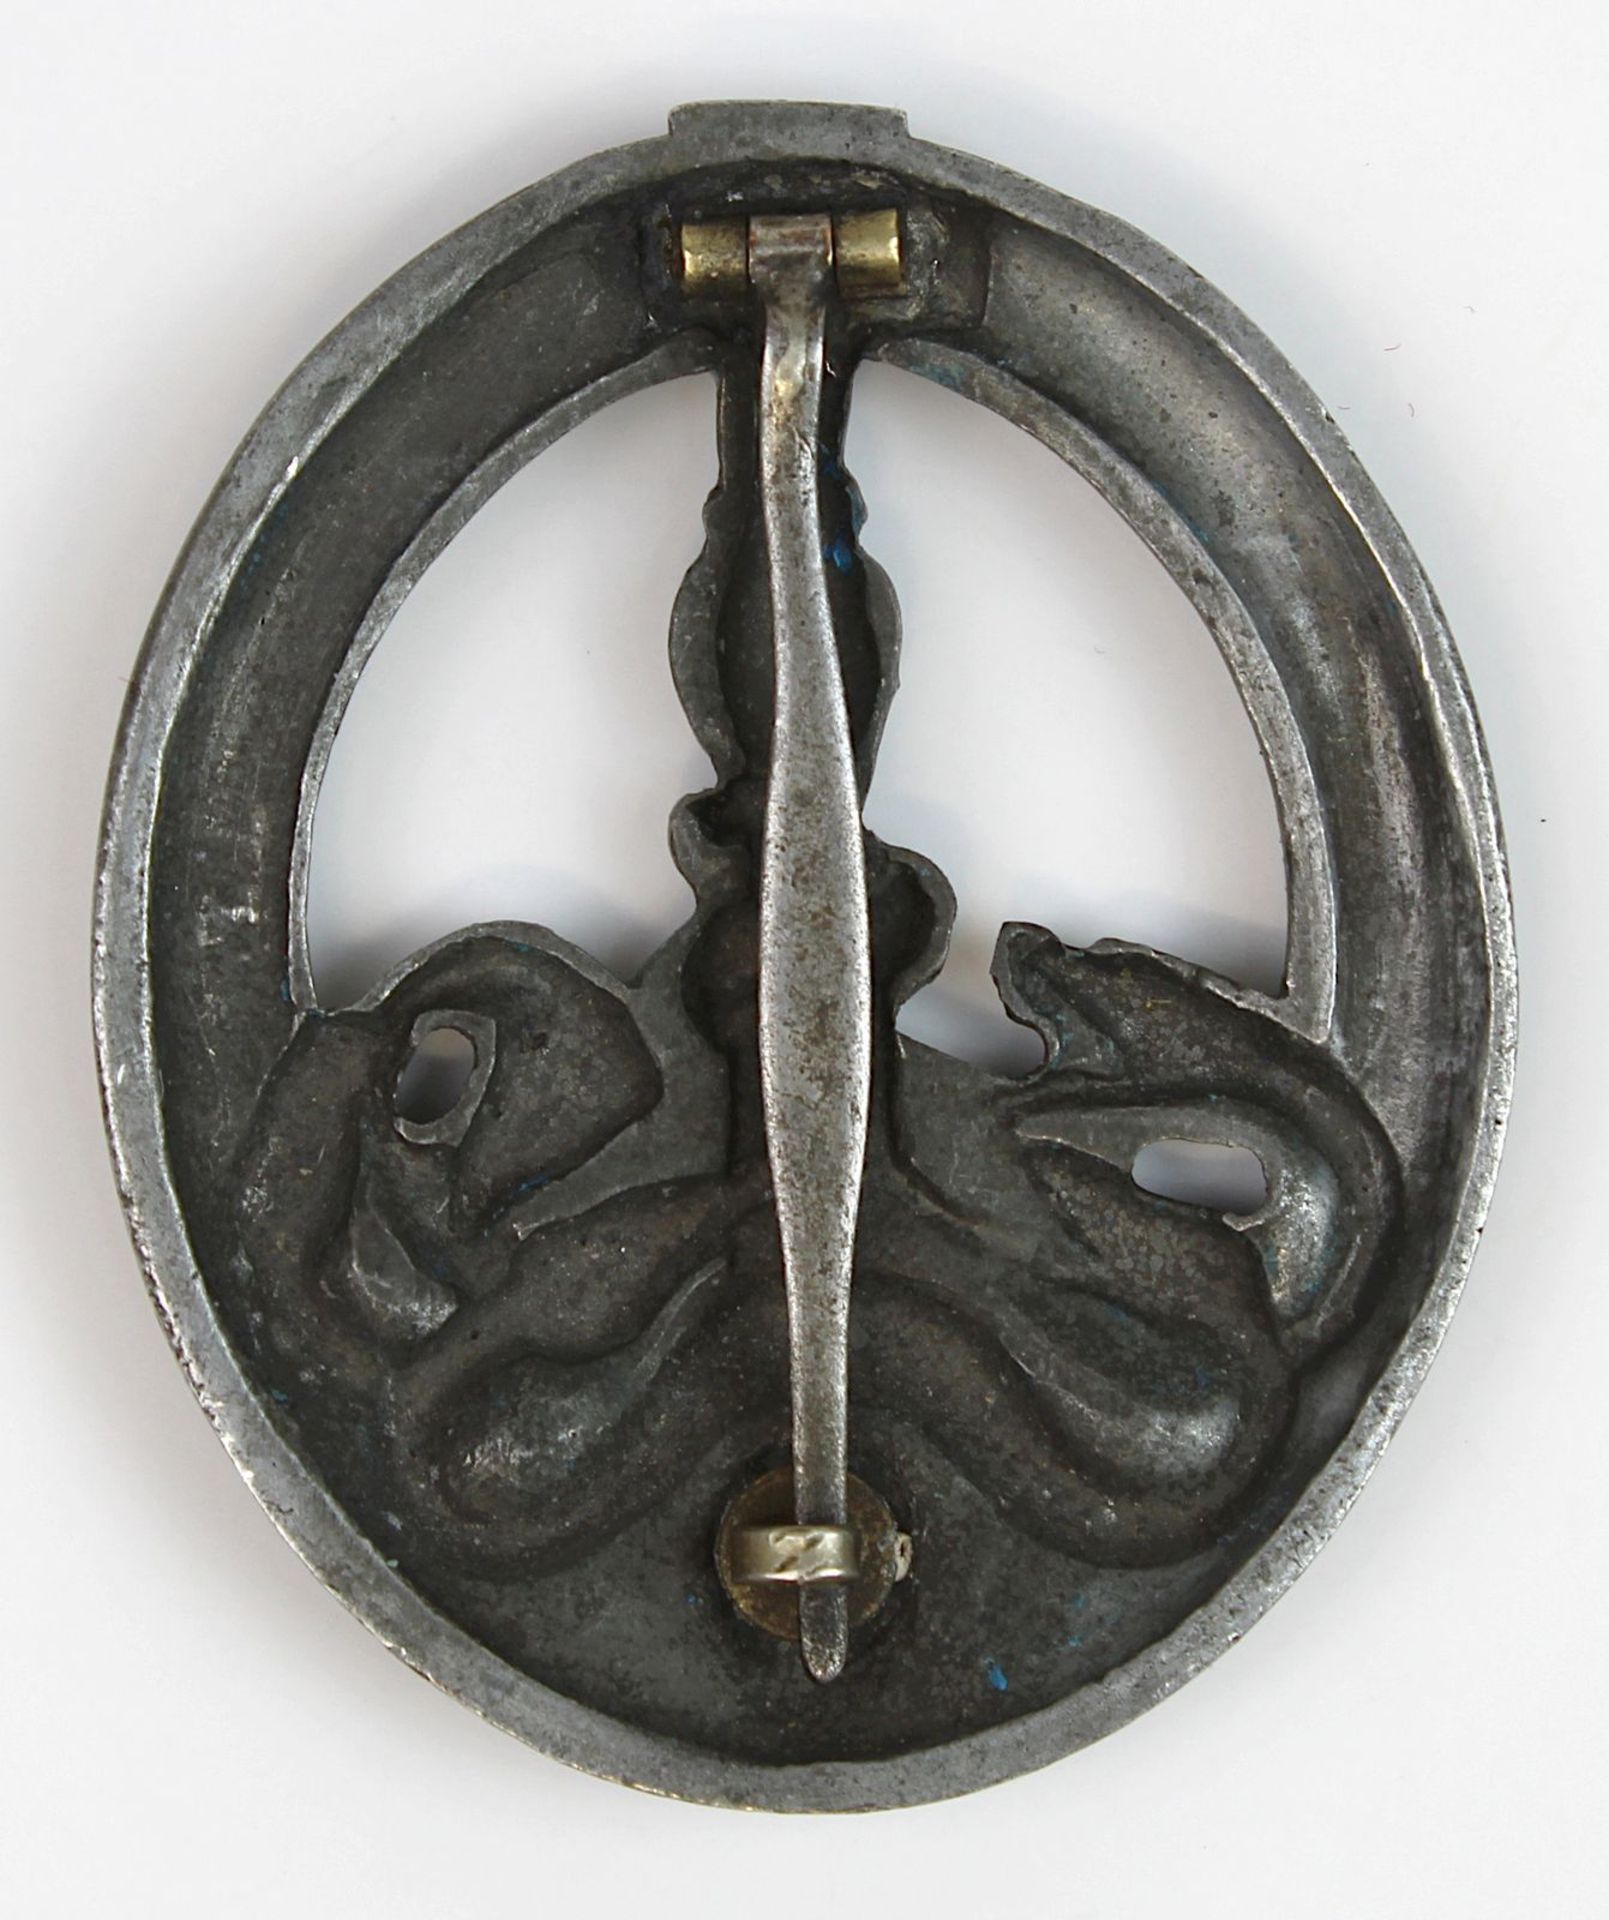 Bandenkampfabzeichen in Silber, Sammlerkopie, halbhohl geprägt, 6 x 5 cm, 4061 -0018 - Image 2 of 2